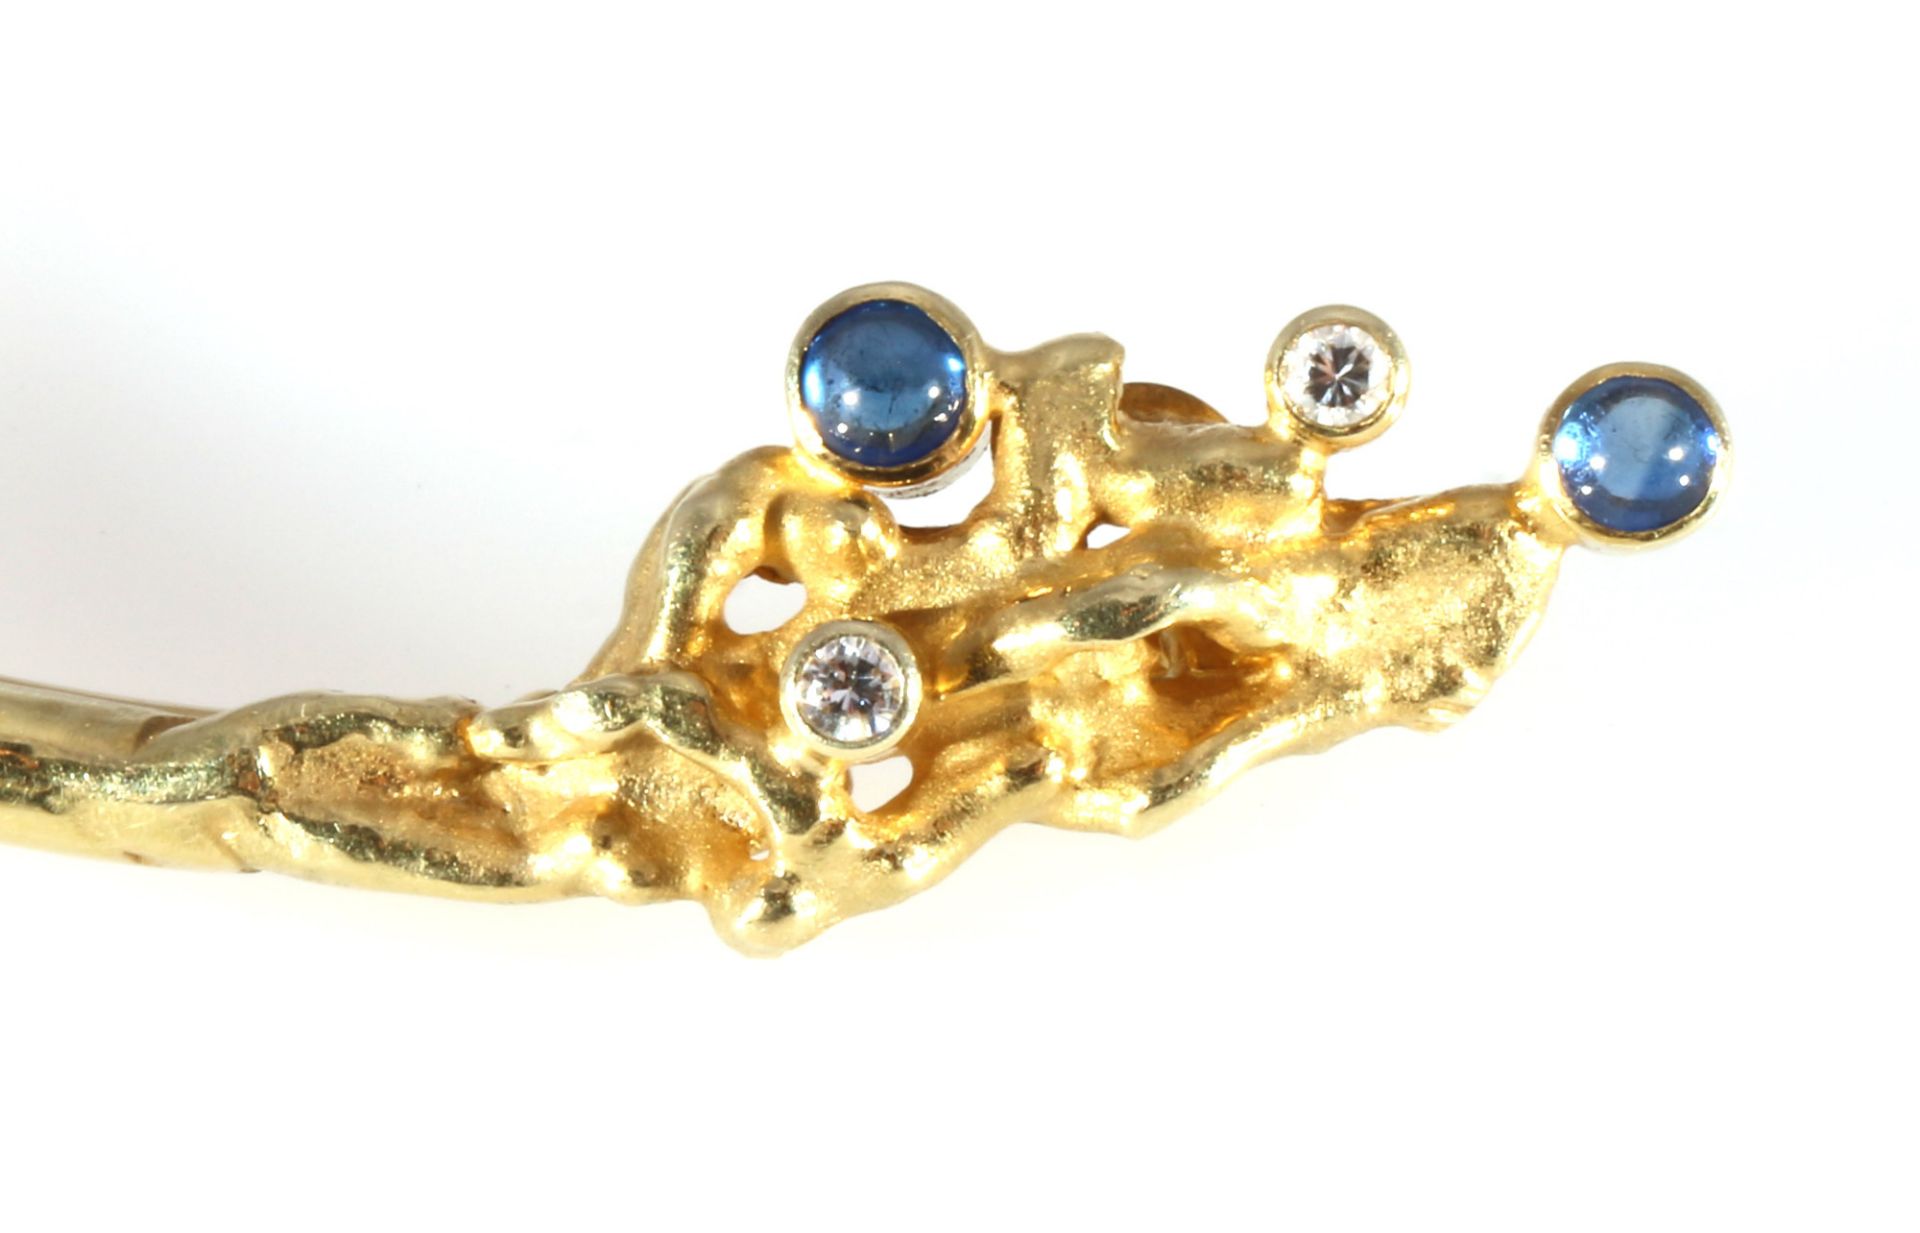 585 Gold Brosche mit Saphiren und Brillanten, 14K gold brooch with sapphires and diamonds, - Image 2 of 3